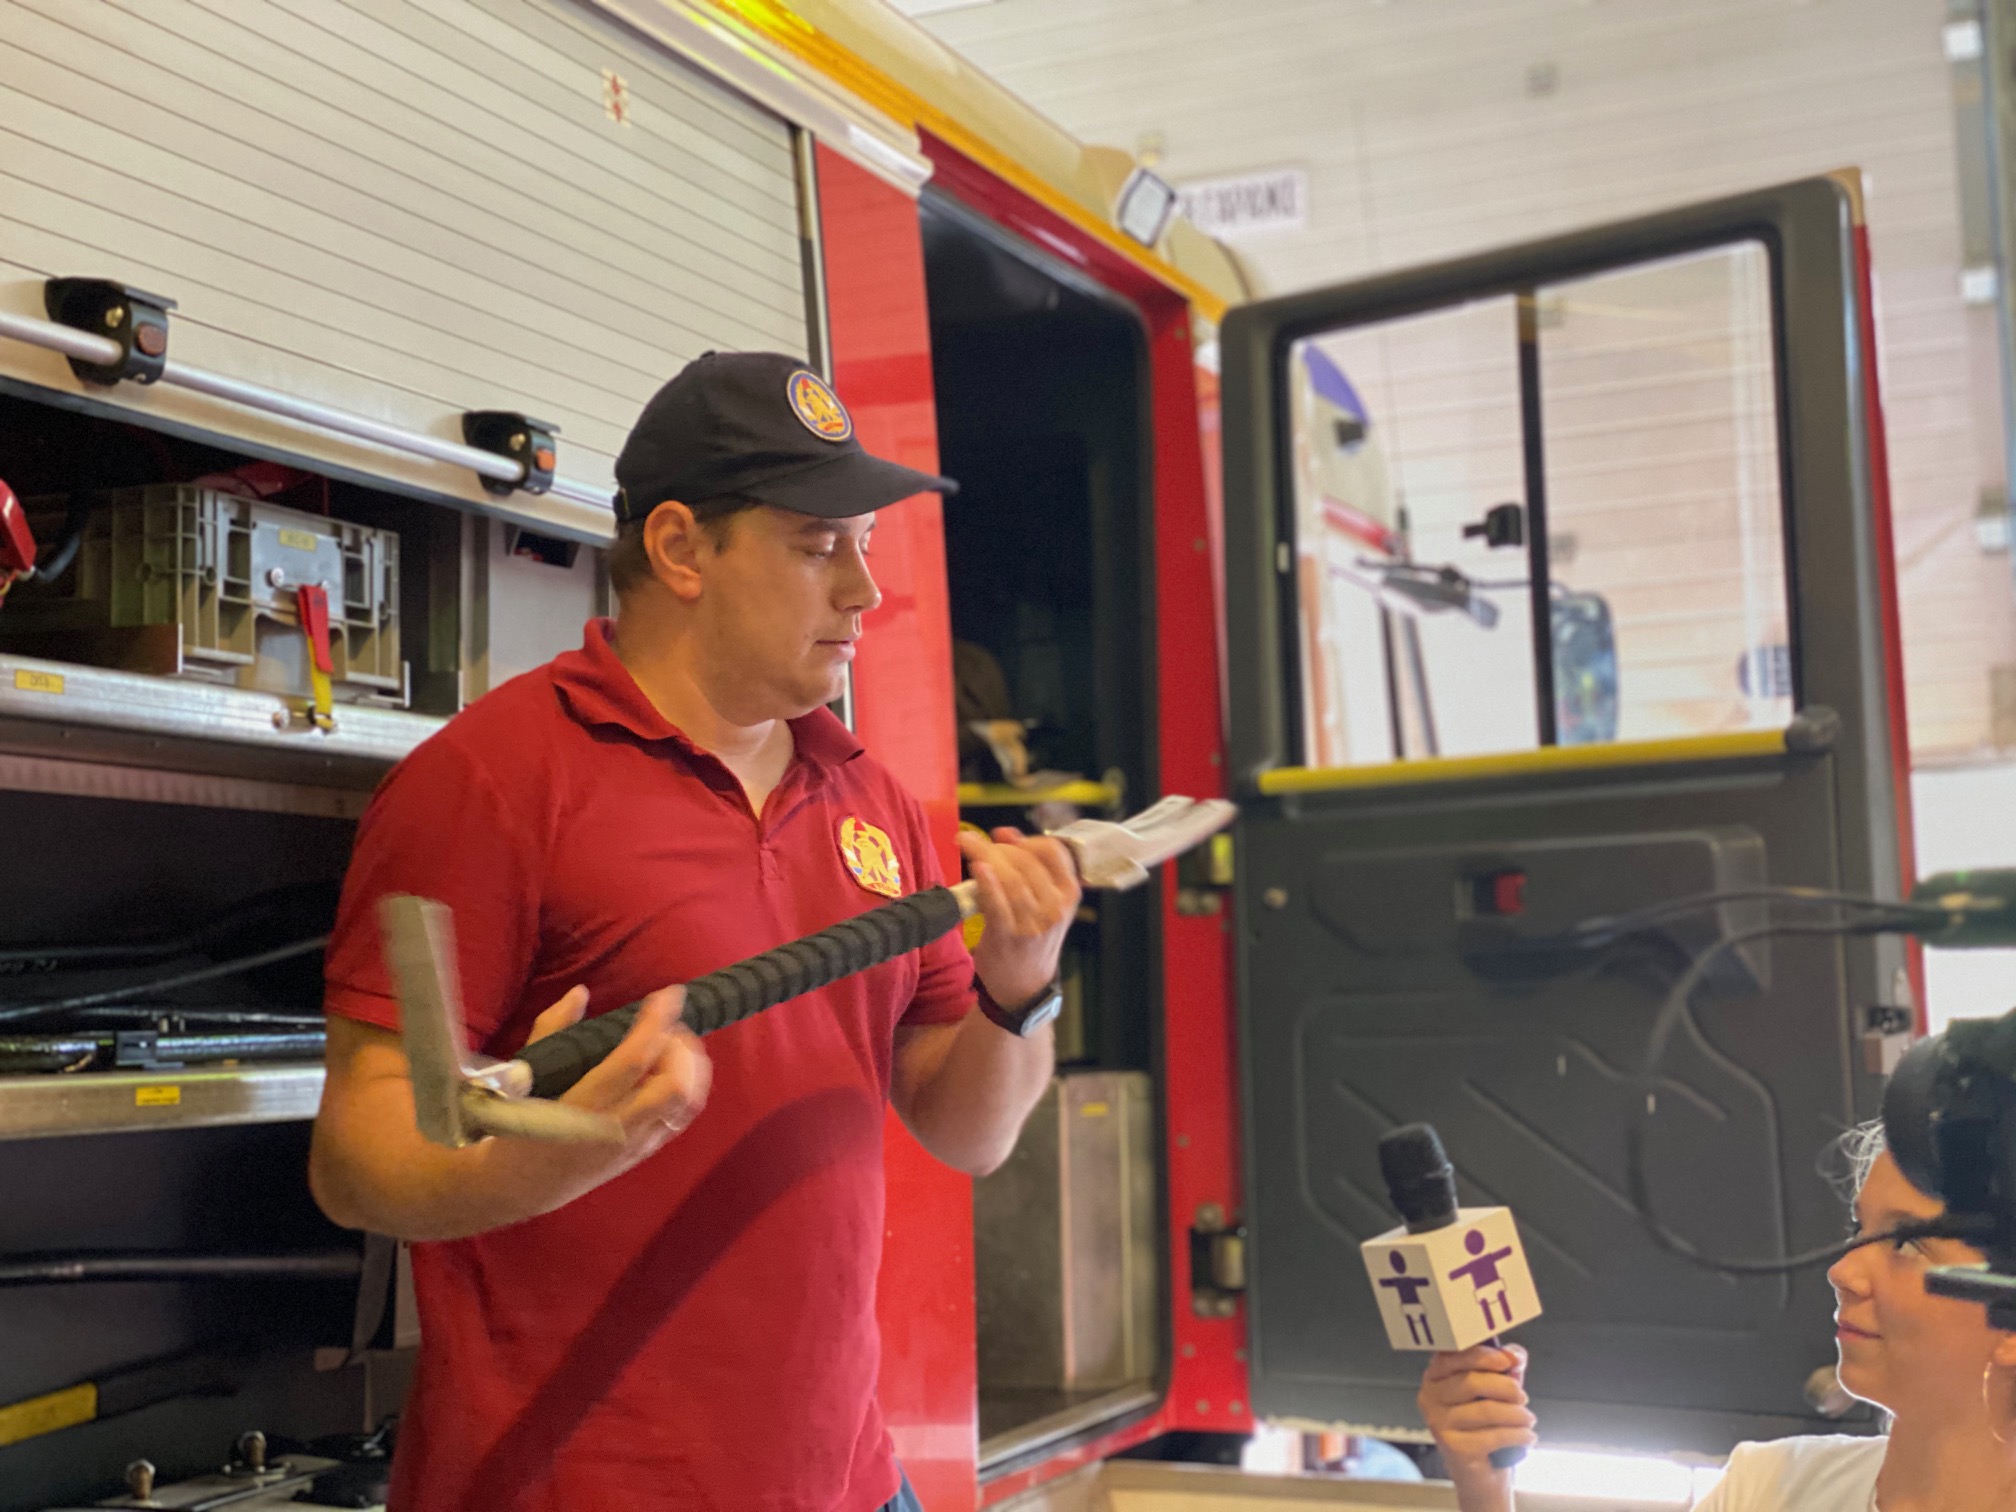 преподаватель умц рассказывает о применении инструментов пожарного